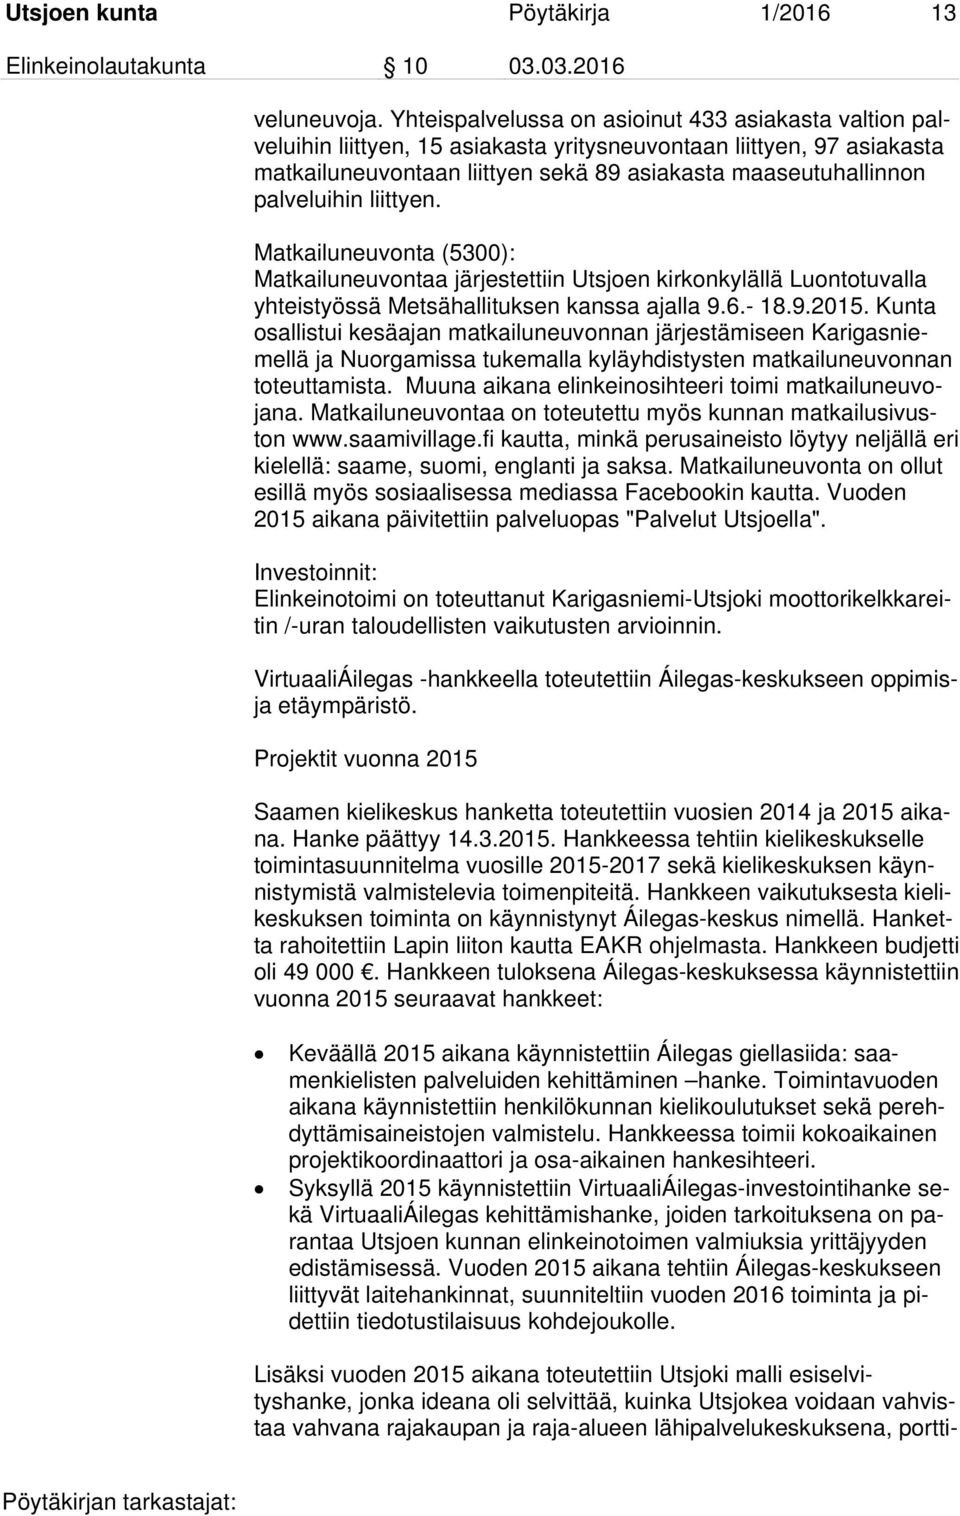 palveluihin liittyen. Matkailuneuvonta (5300): Matkailuneuvontaa järjestettiin Utsjoen kirkonkylällä Luontotuvalla yhteistyössä Metsähallituksen kanssa ajalla 9.6.- 18.9.2015.